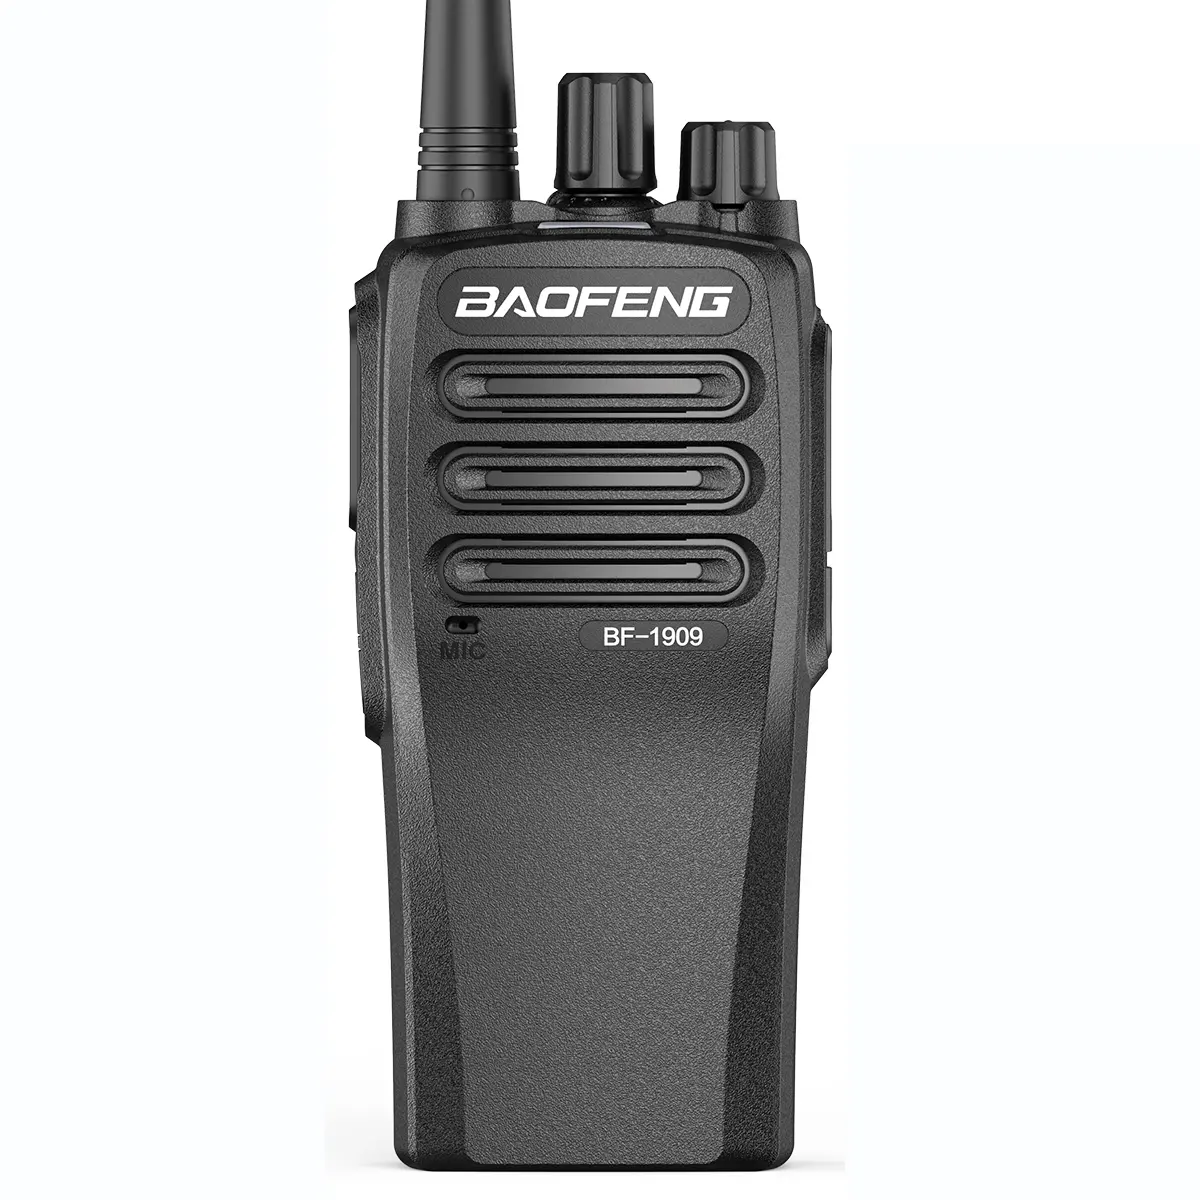 Baofeng-Radio bidireccional DMR de largo alcance, soporte de carga tipo C, 10W, Uhf, 400-470MHz, actualización de walkie-talkie